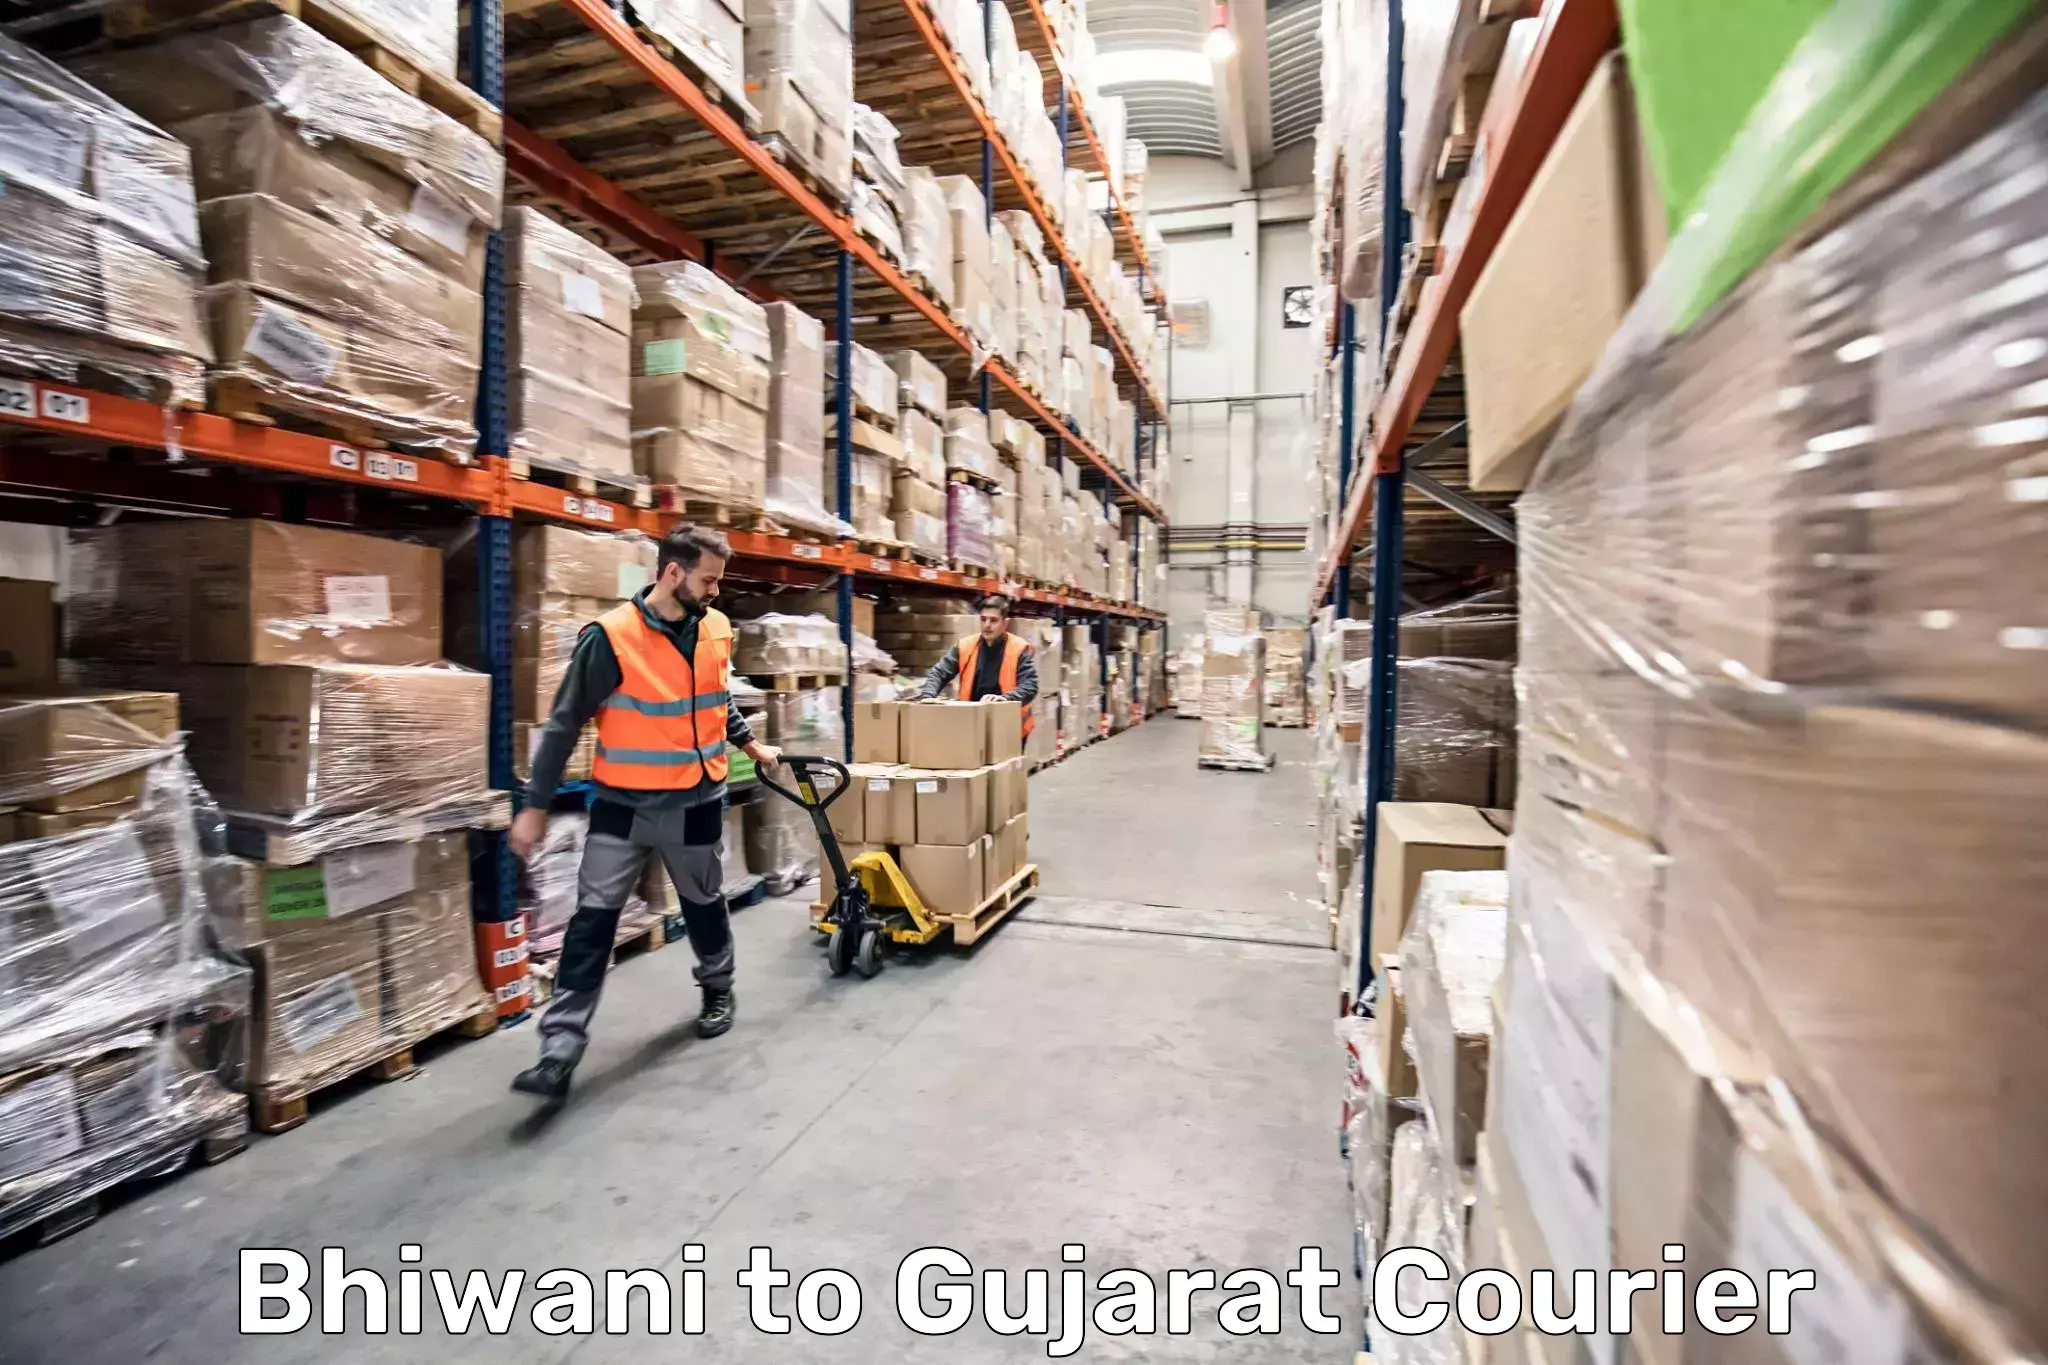 Baggage transport network Bhiwani to Gujarat